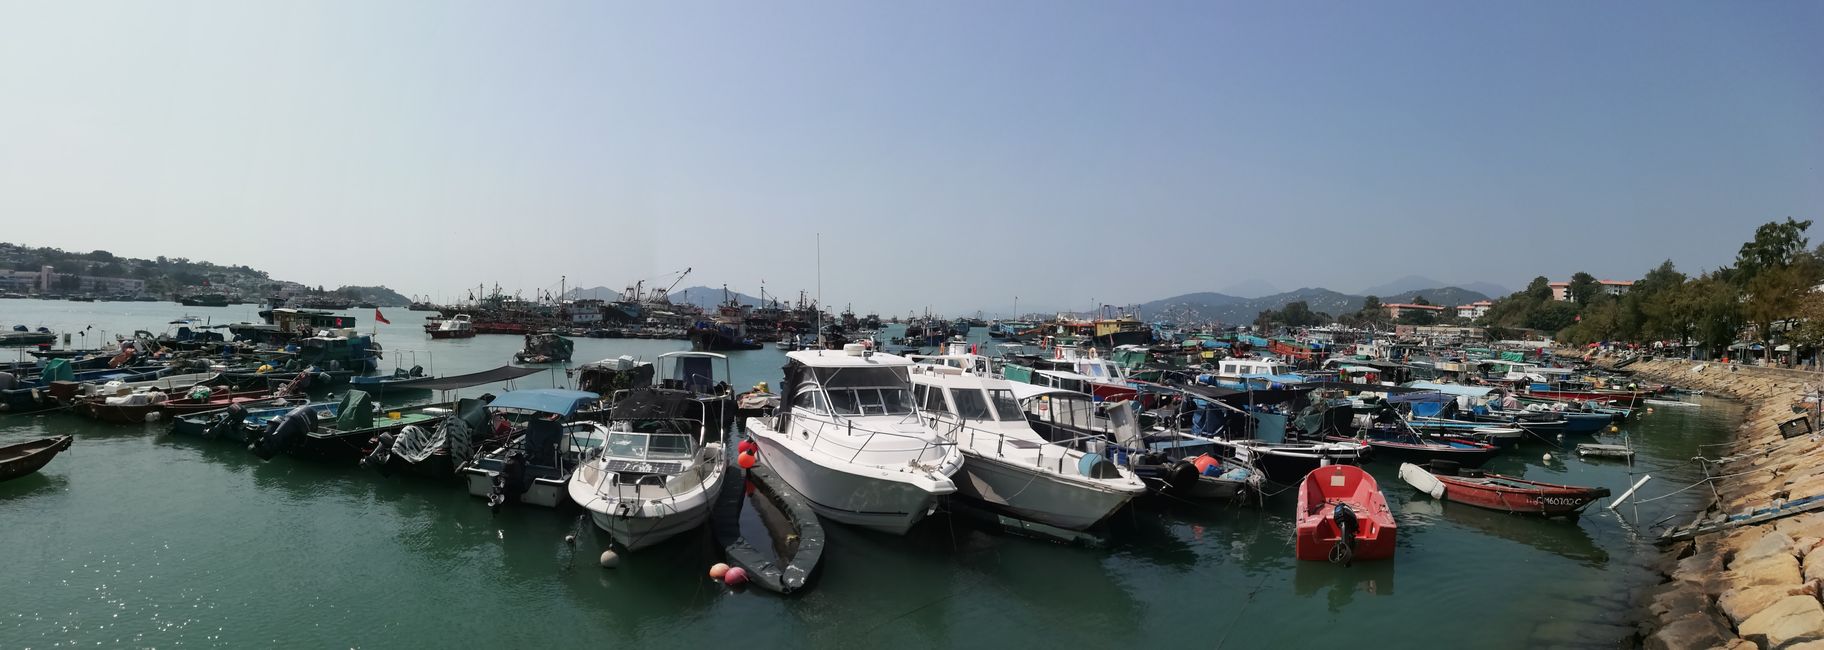 Fischerboote im Hafen von Chueng Chau